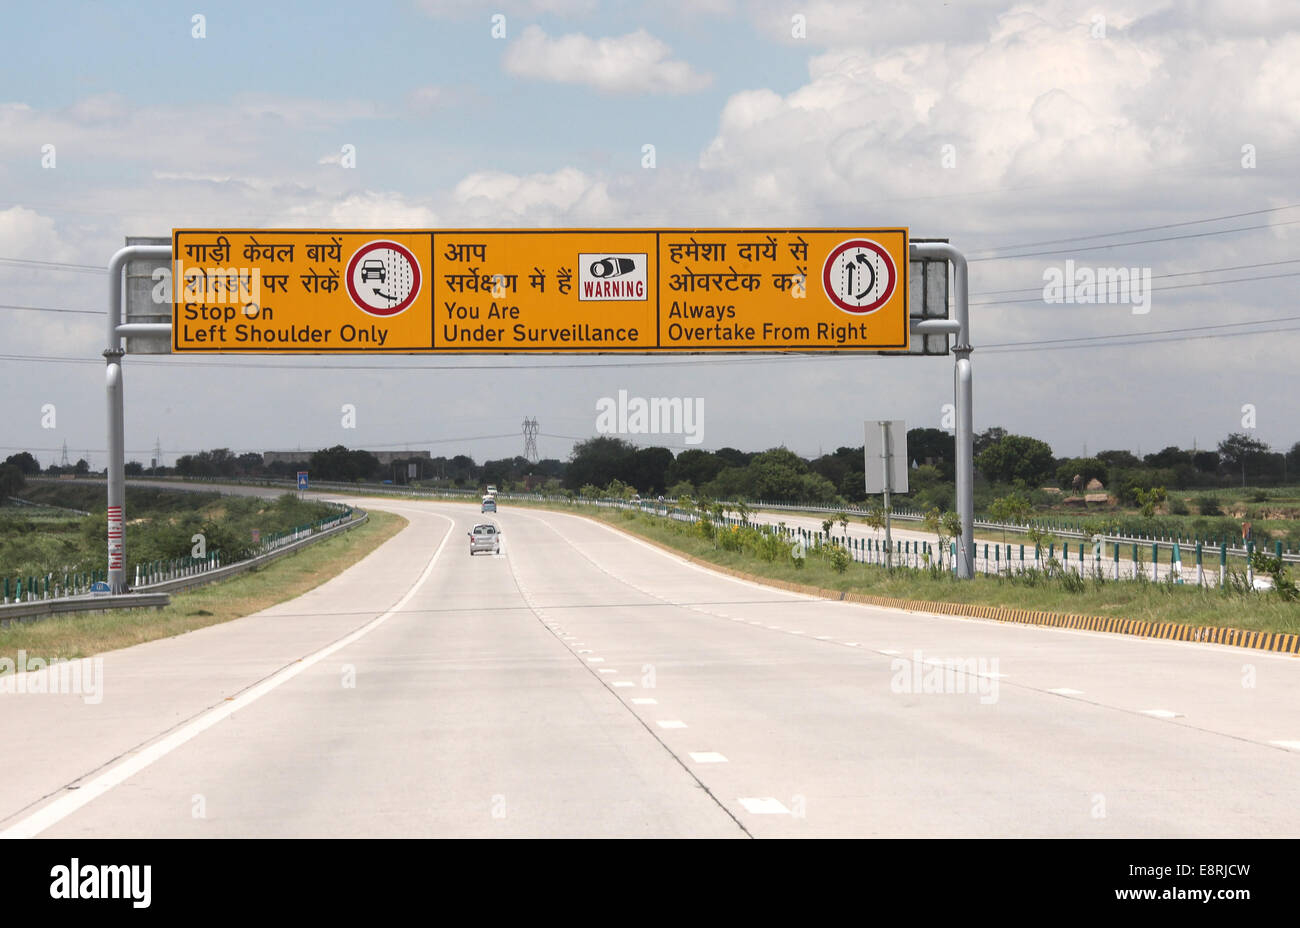 3000 कराेड़ की लागत से बनेगा एक्सप्रेस वे, आगरा रिंग रोड से ग्वालियर बायपास  पर मिलेगा - Expressway to be built at a cost of 3000 crores will be  available from Agra